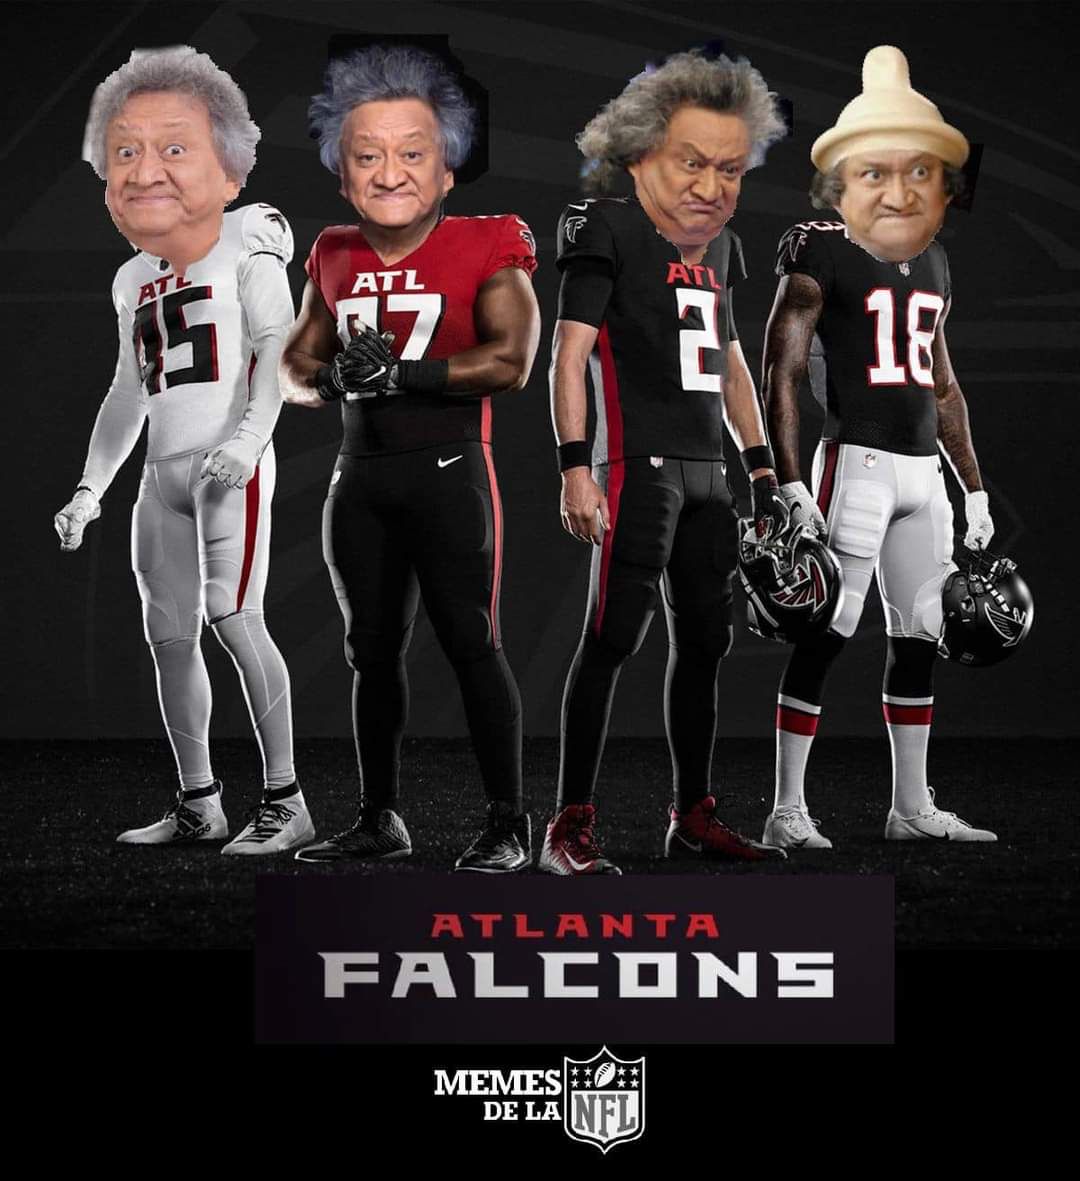 Meme de la semana 10 de la NFL